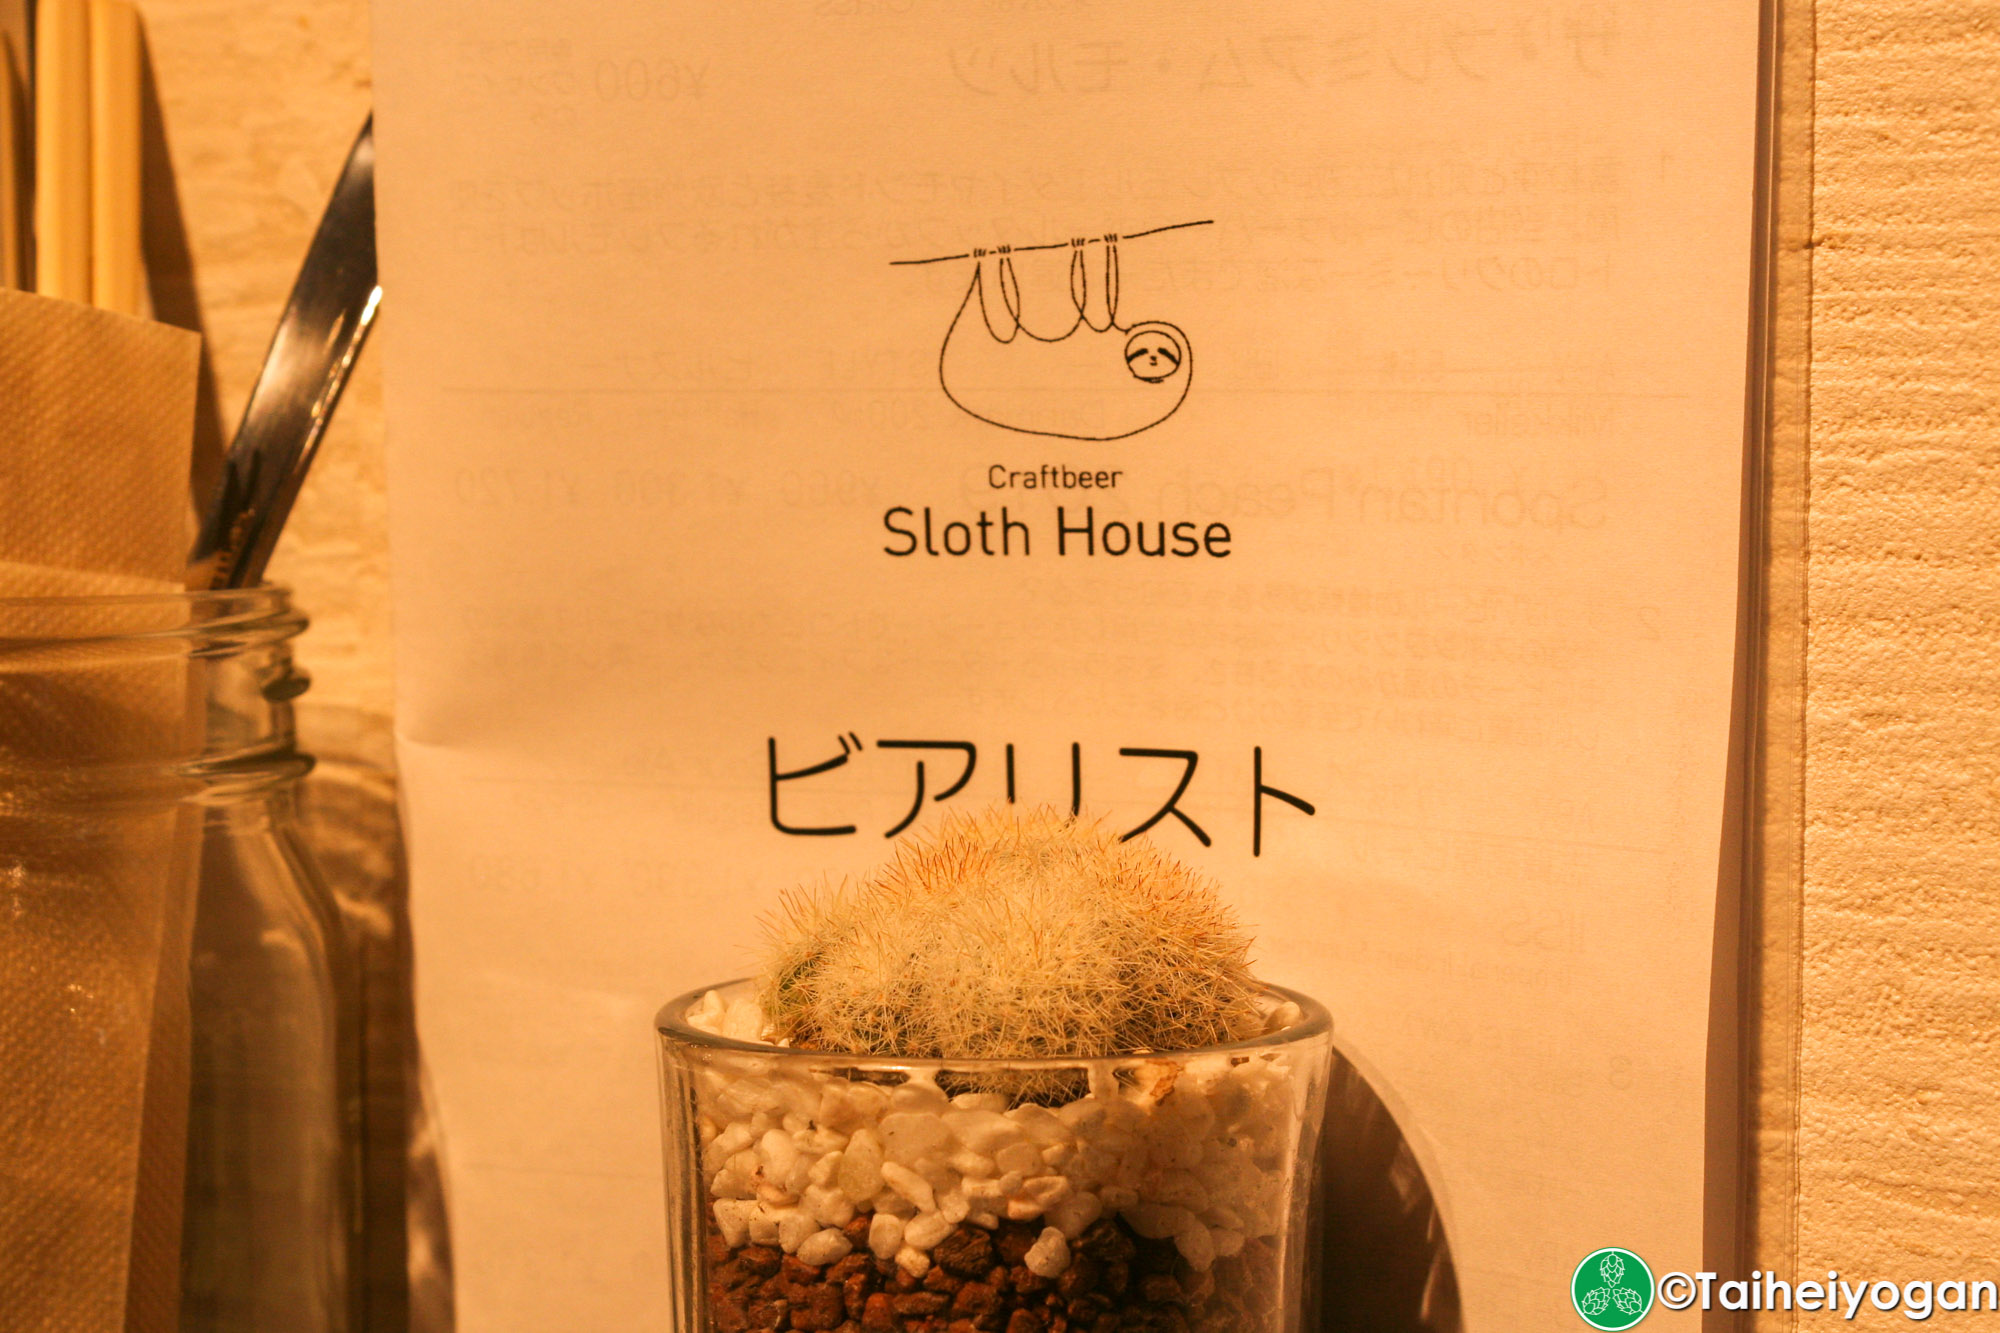 Craftbeer Sloth House - Interior - Menu & Decorations